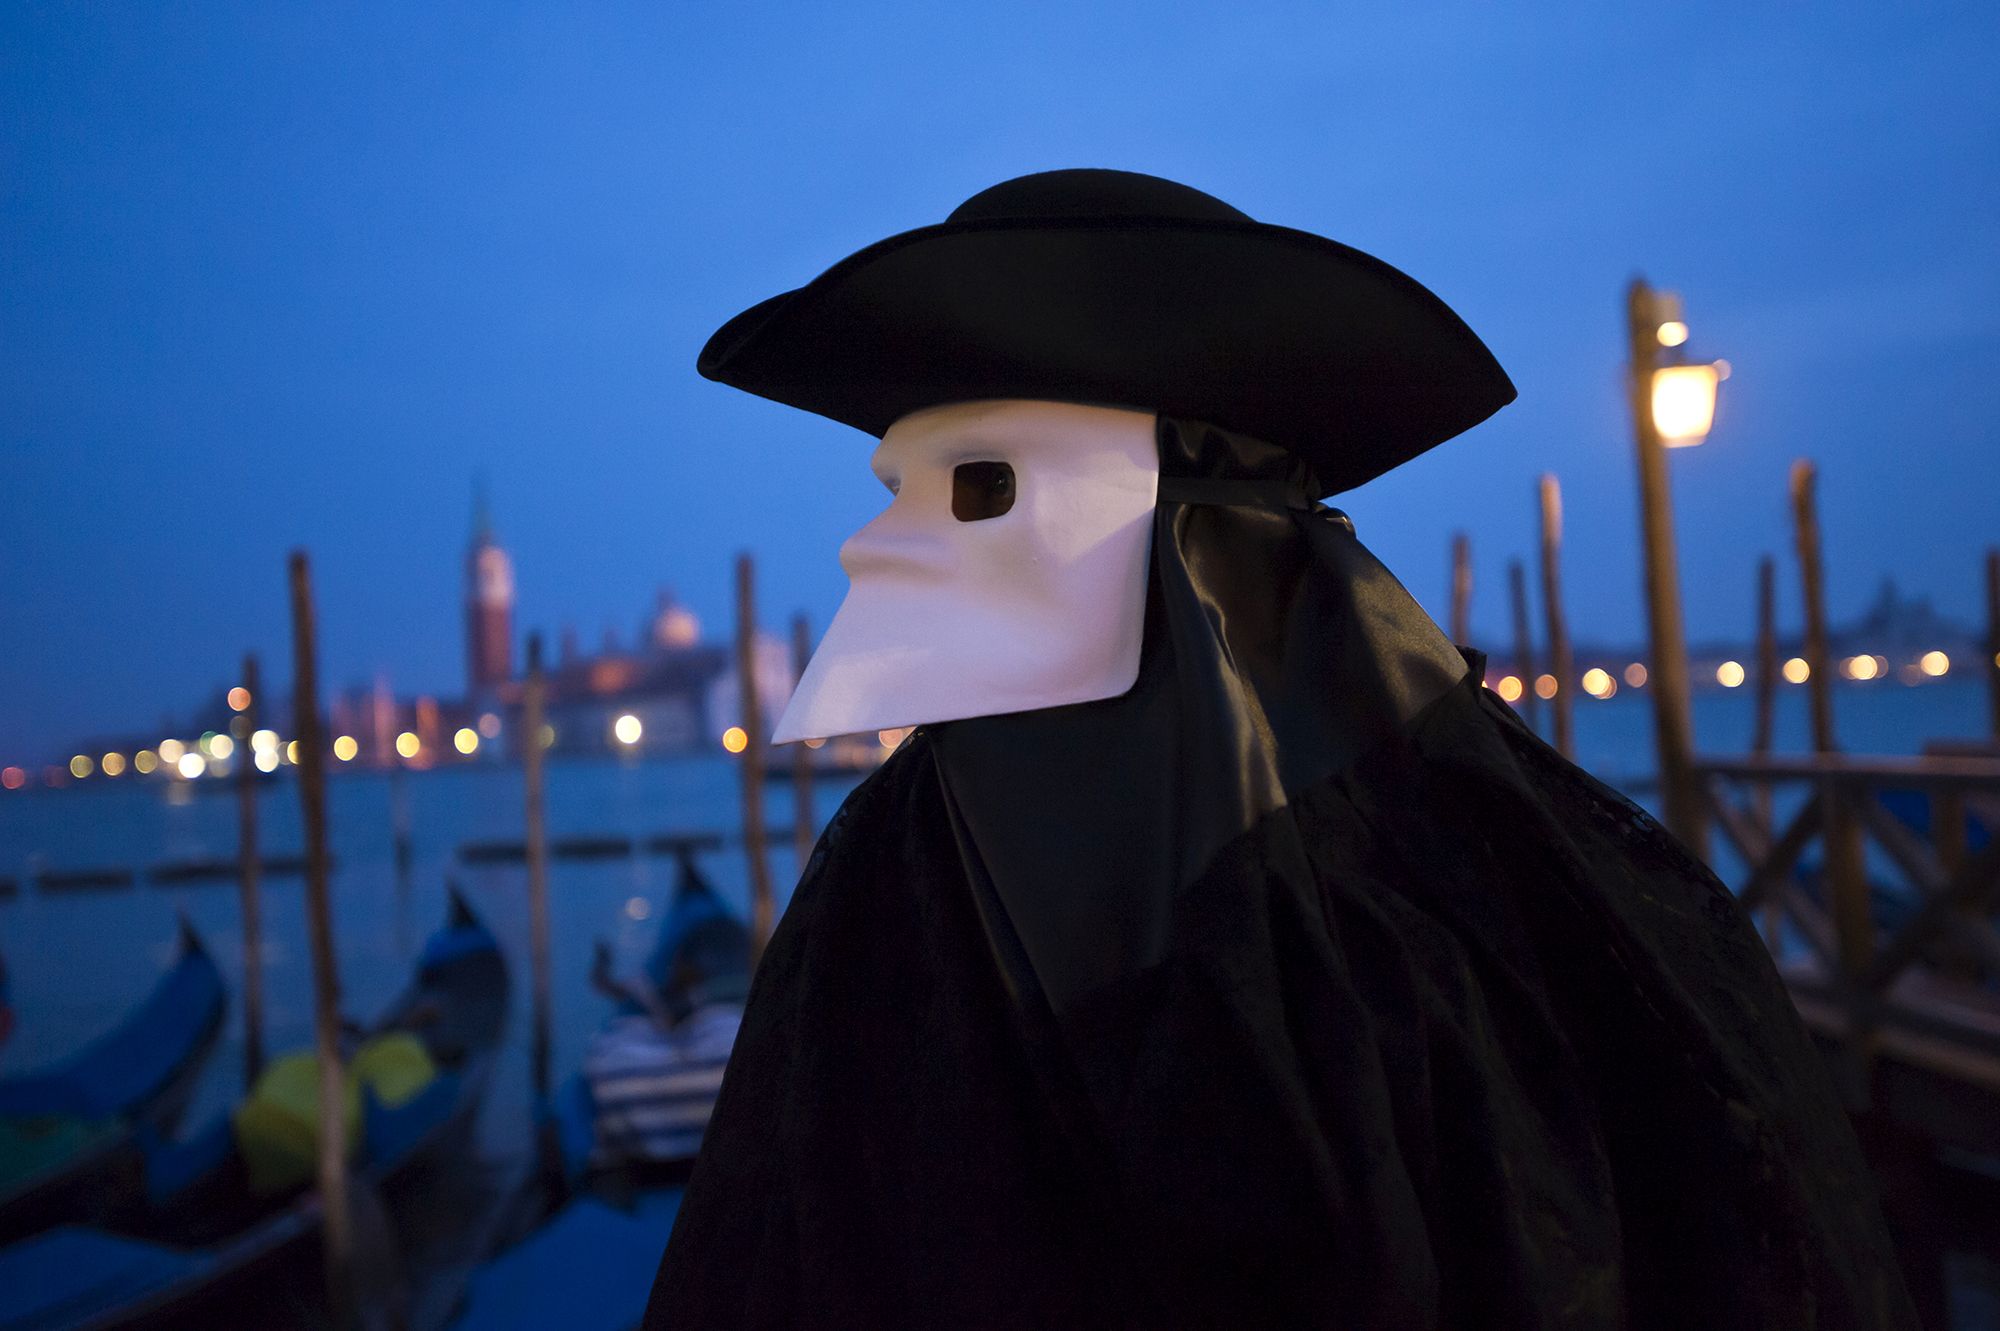 En qué se inspiran las máscaras del carnaval de Venecia? - Quo